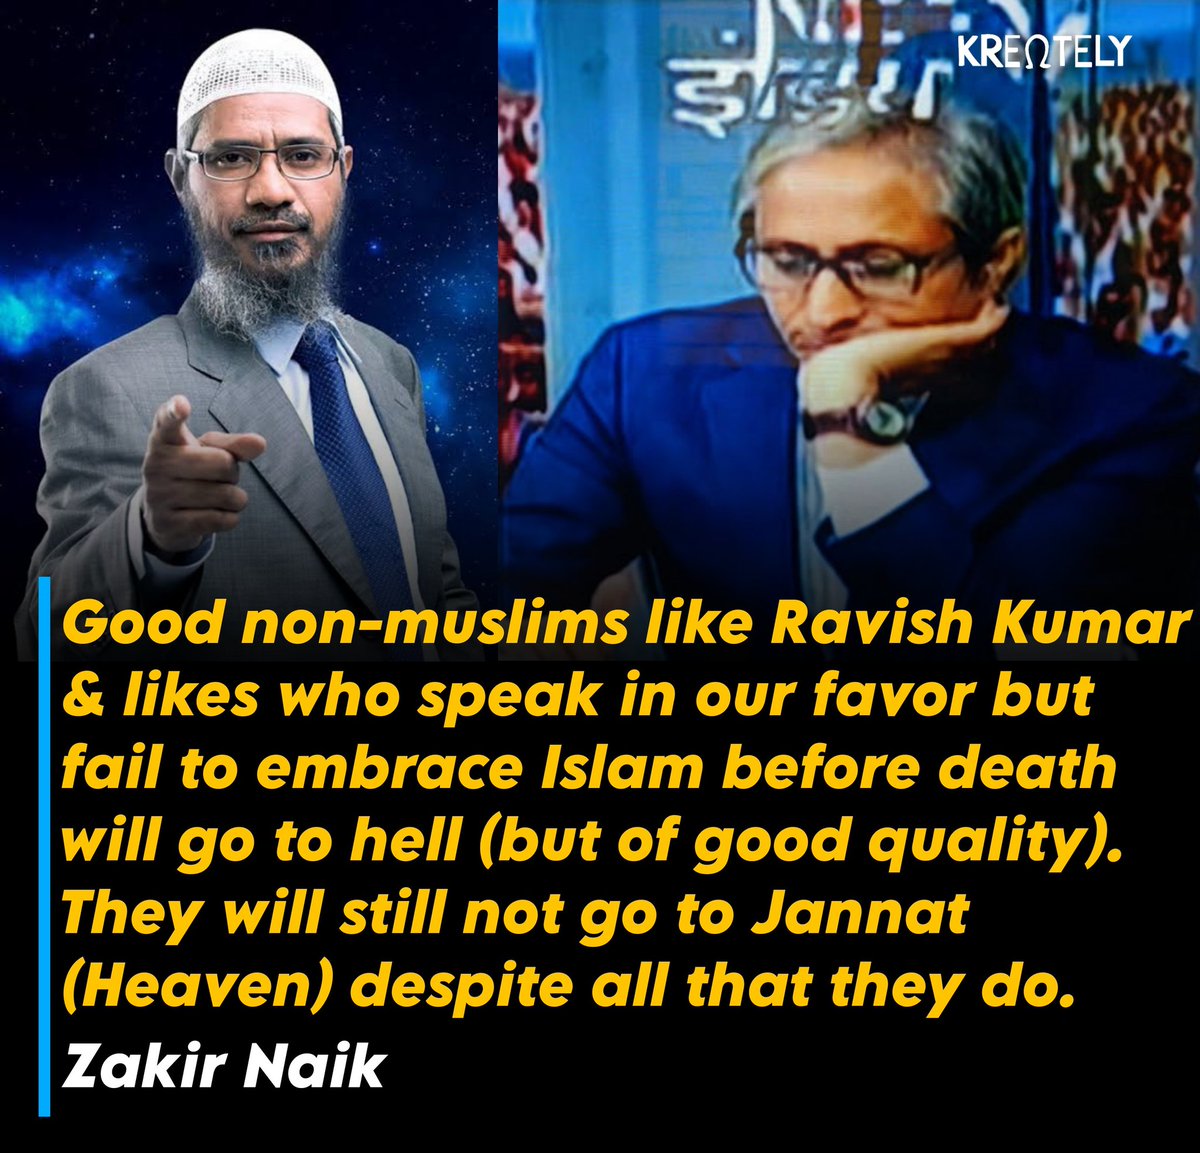 लगता है रवीश कुमार के साथ धोखा हो गया
#ZakirNaik #RavishKumar